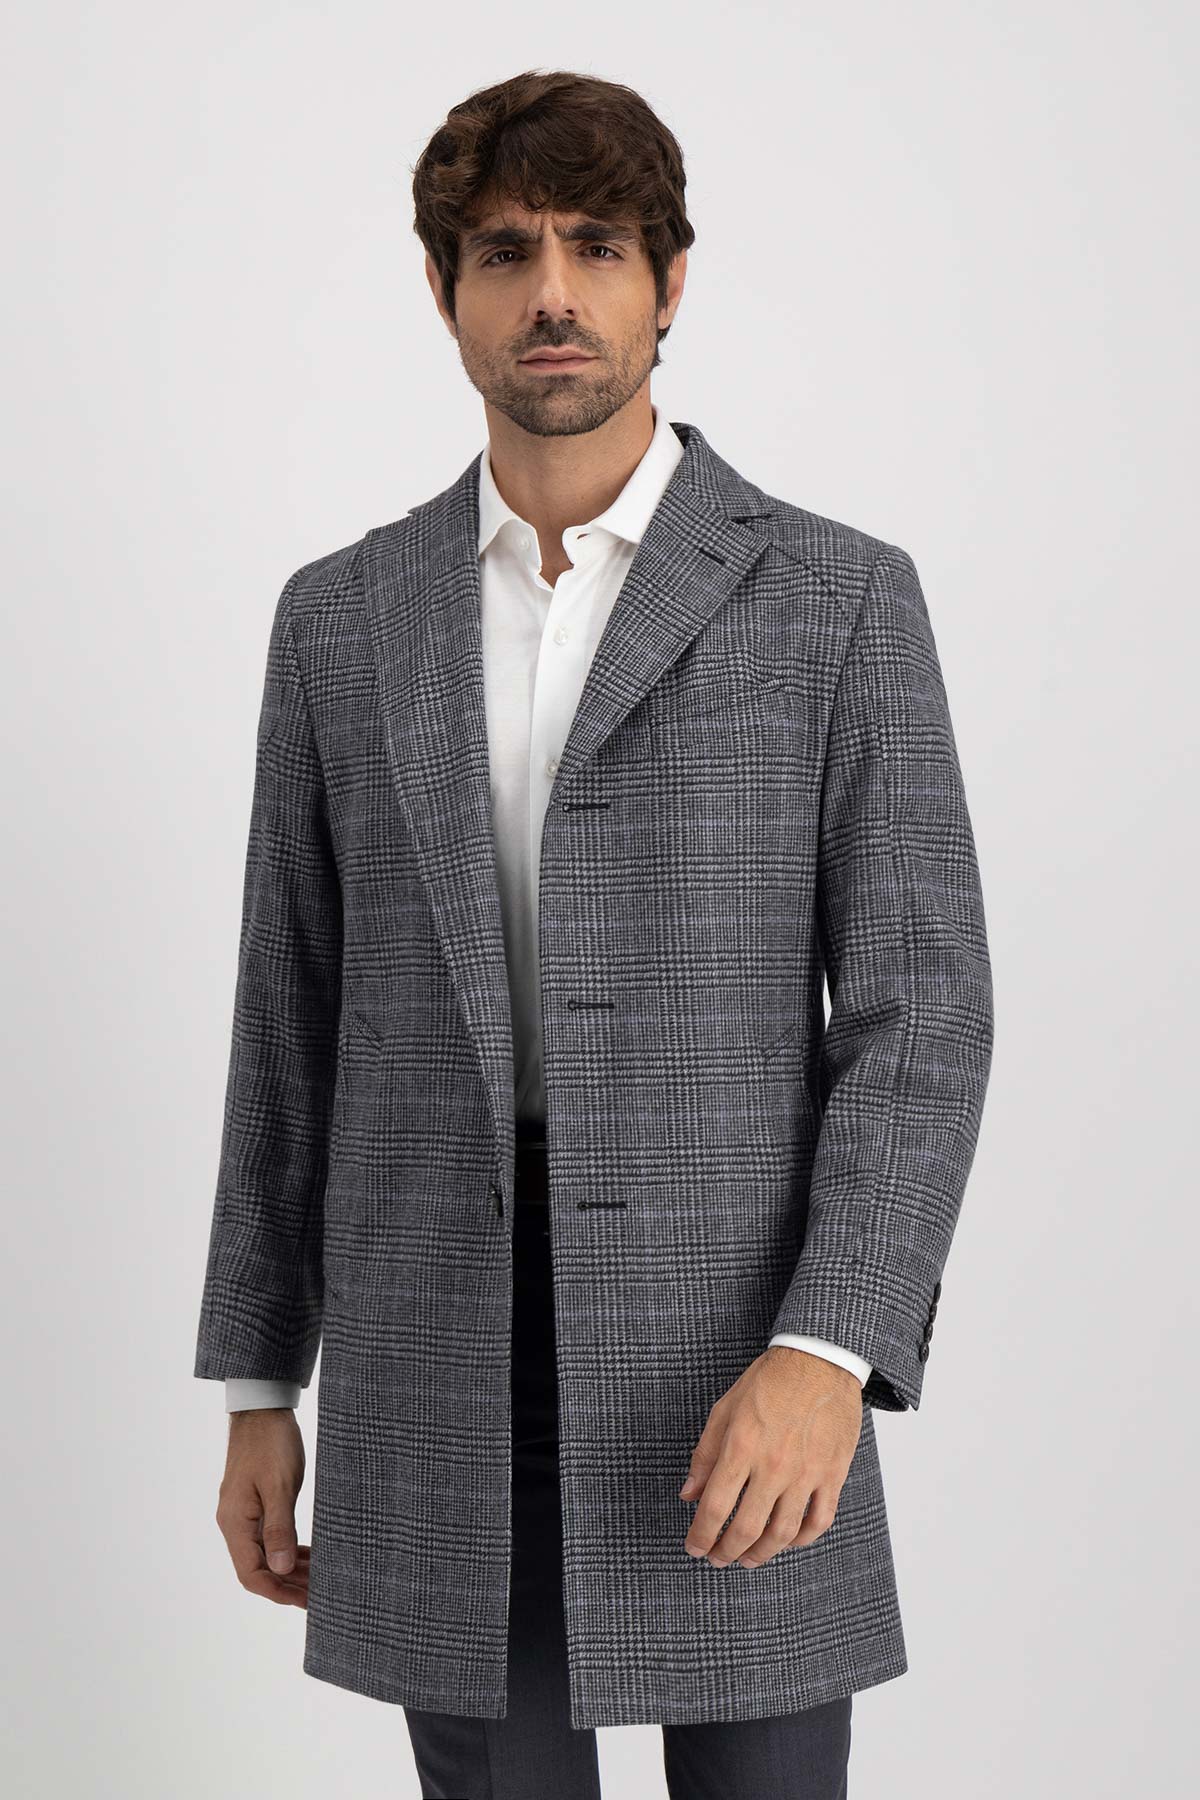 Comprar abrigo gris hombre, estilo ingles. Oxford coat modern navy